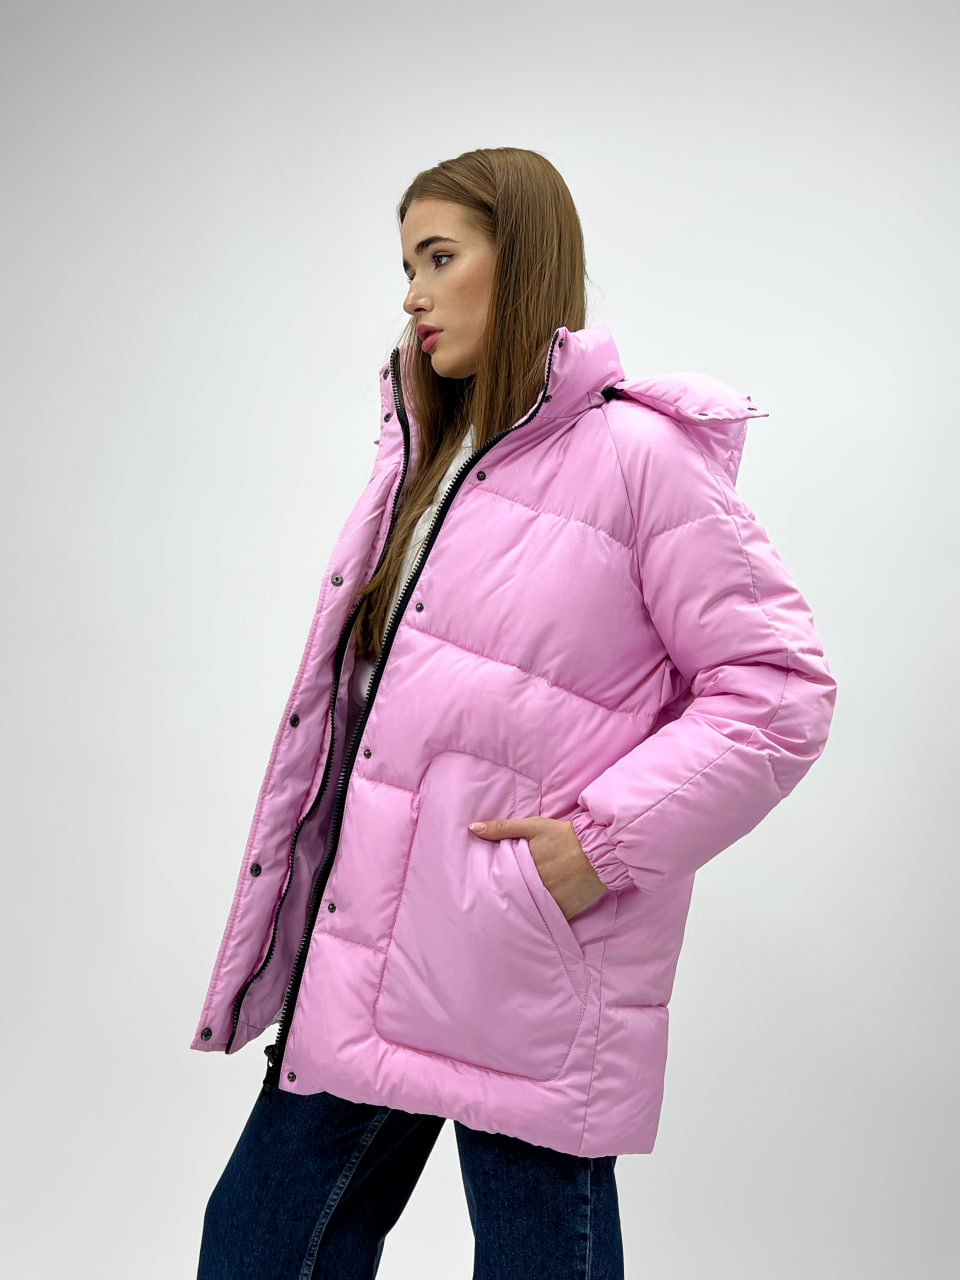 Жіноча зимова куртка-пуховик Reload Elly рожевий/ Зимовий пуховик оверсайз стильний теплий - Фото 4